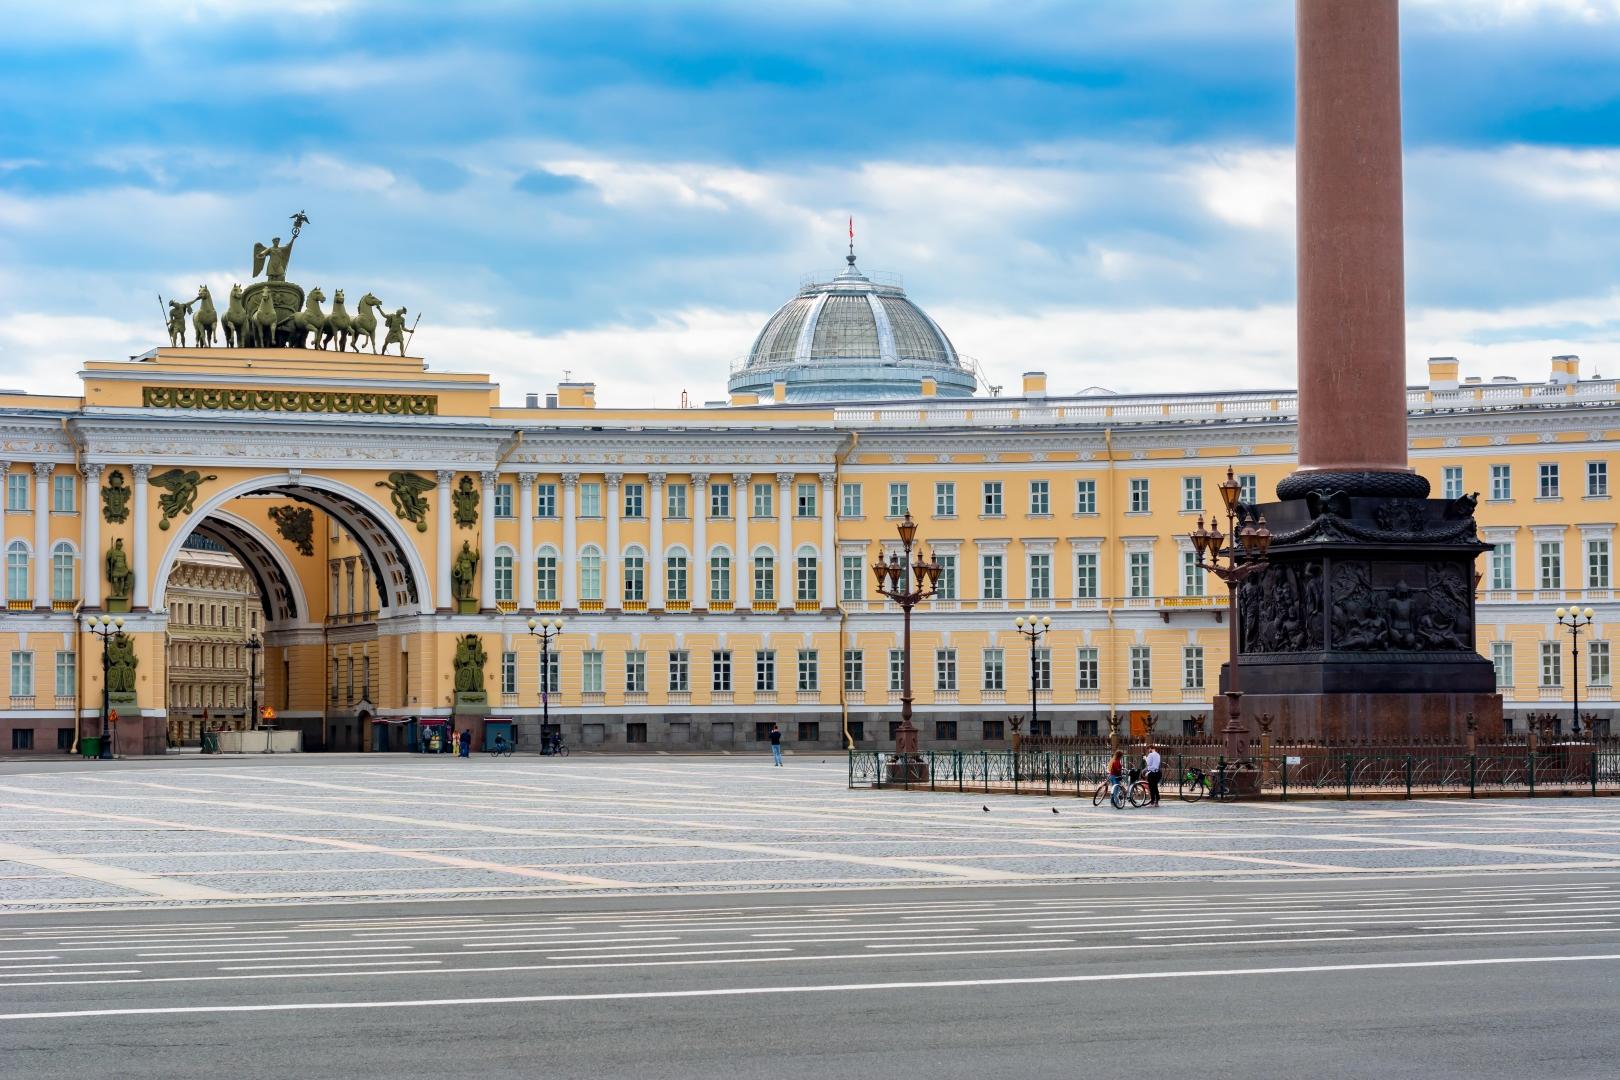 Интерактивная экскурсия с виртуальным гидом «Легенды Санкт-Петербурга» со скидкой 50%